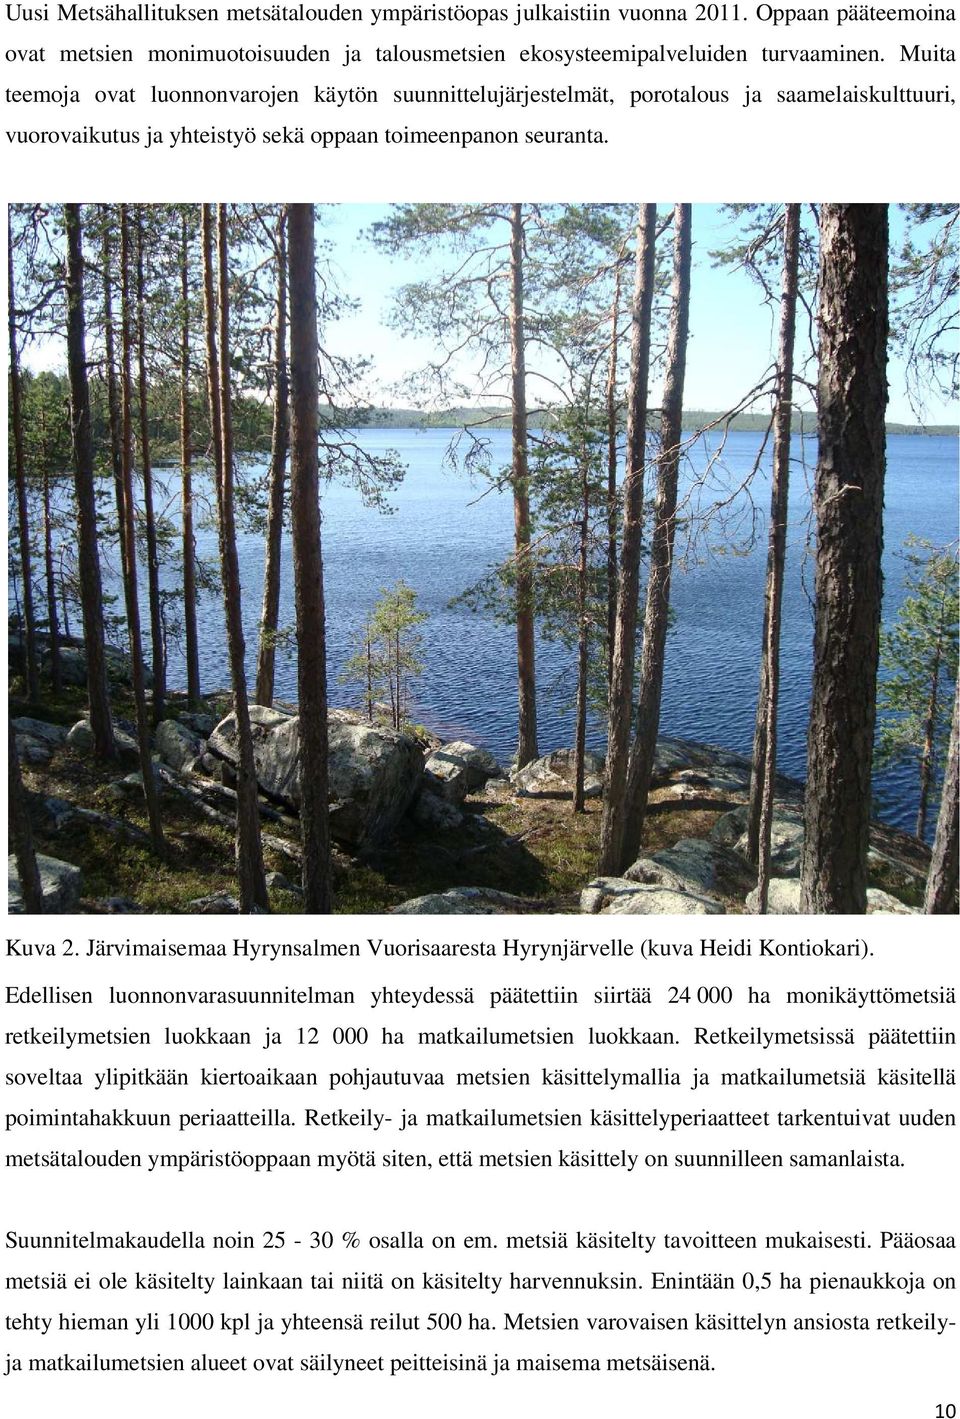 Järvimaisemaa Hyrynsalmen Vuorisaaresta Hyrynjärvelle (kuva Heidi Kontiokari).